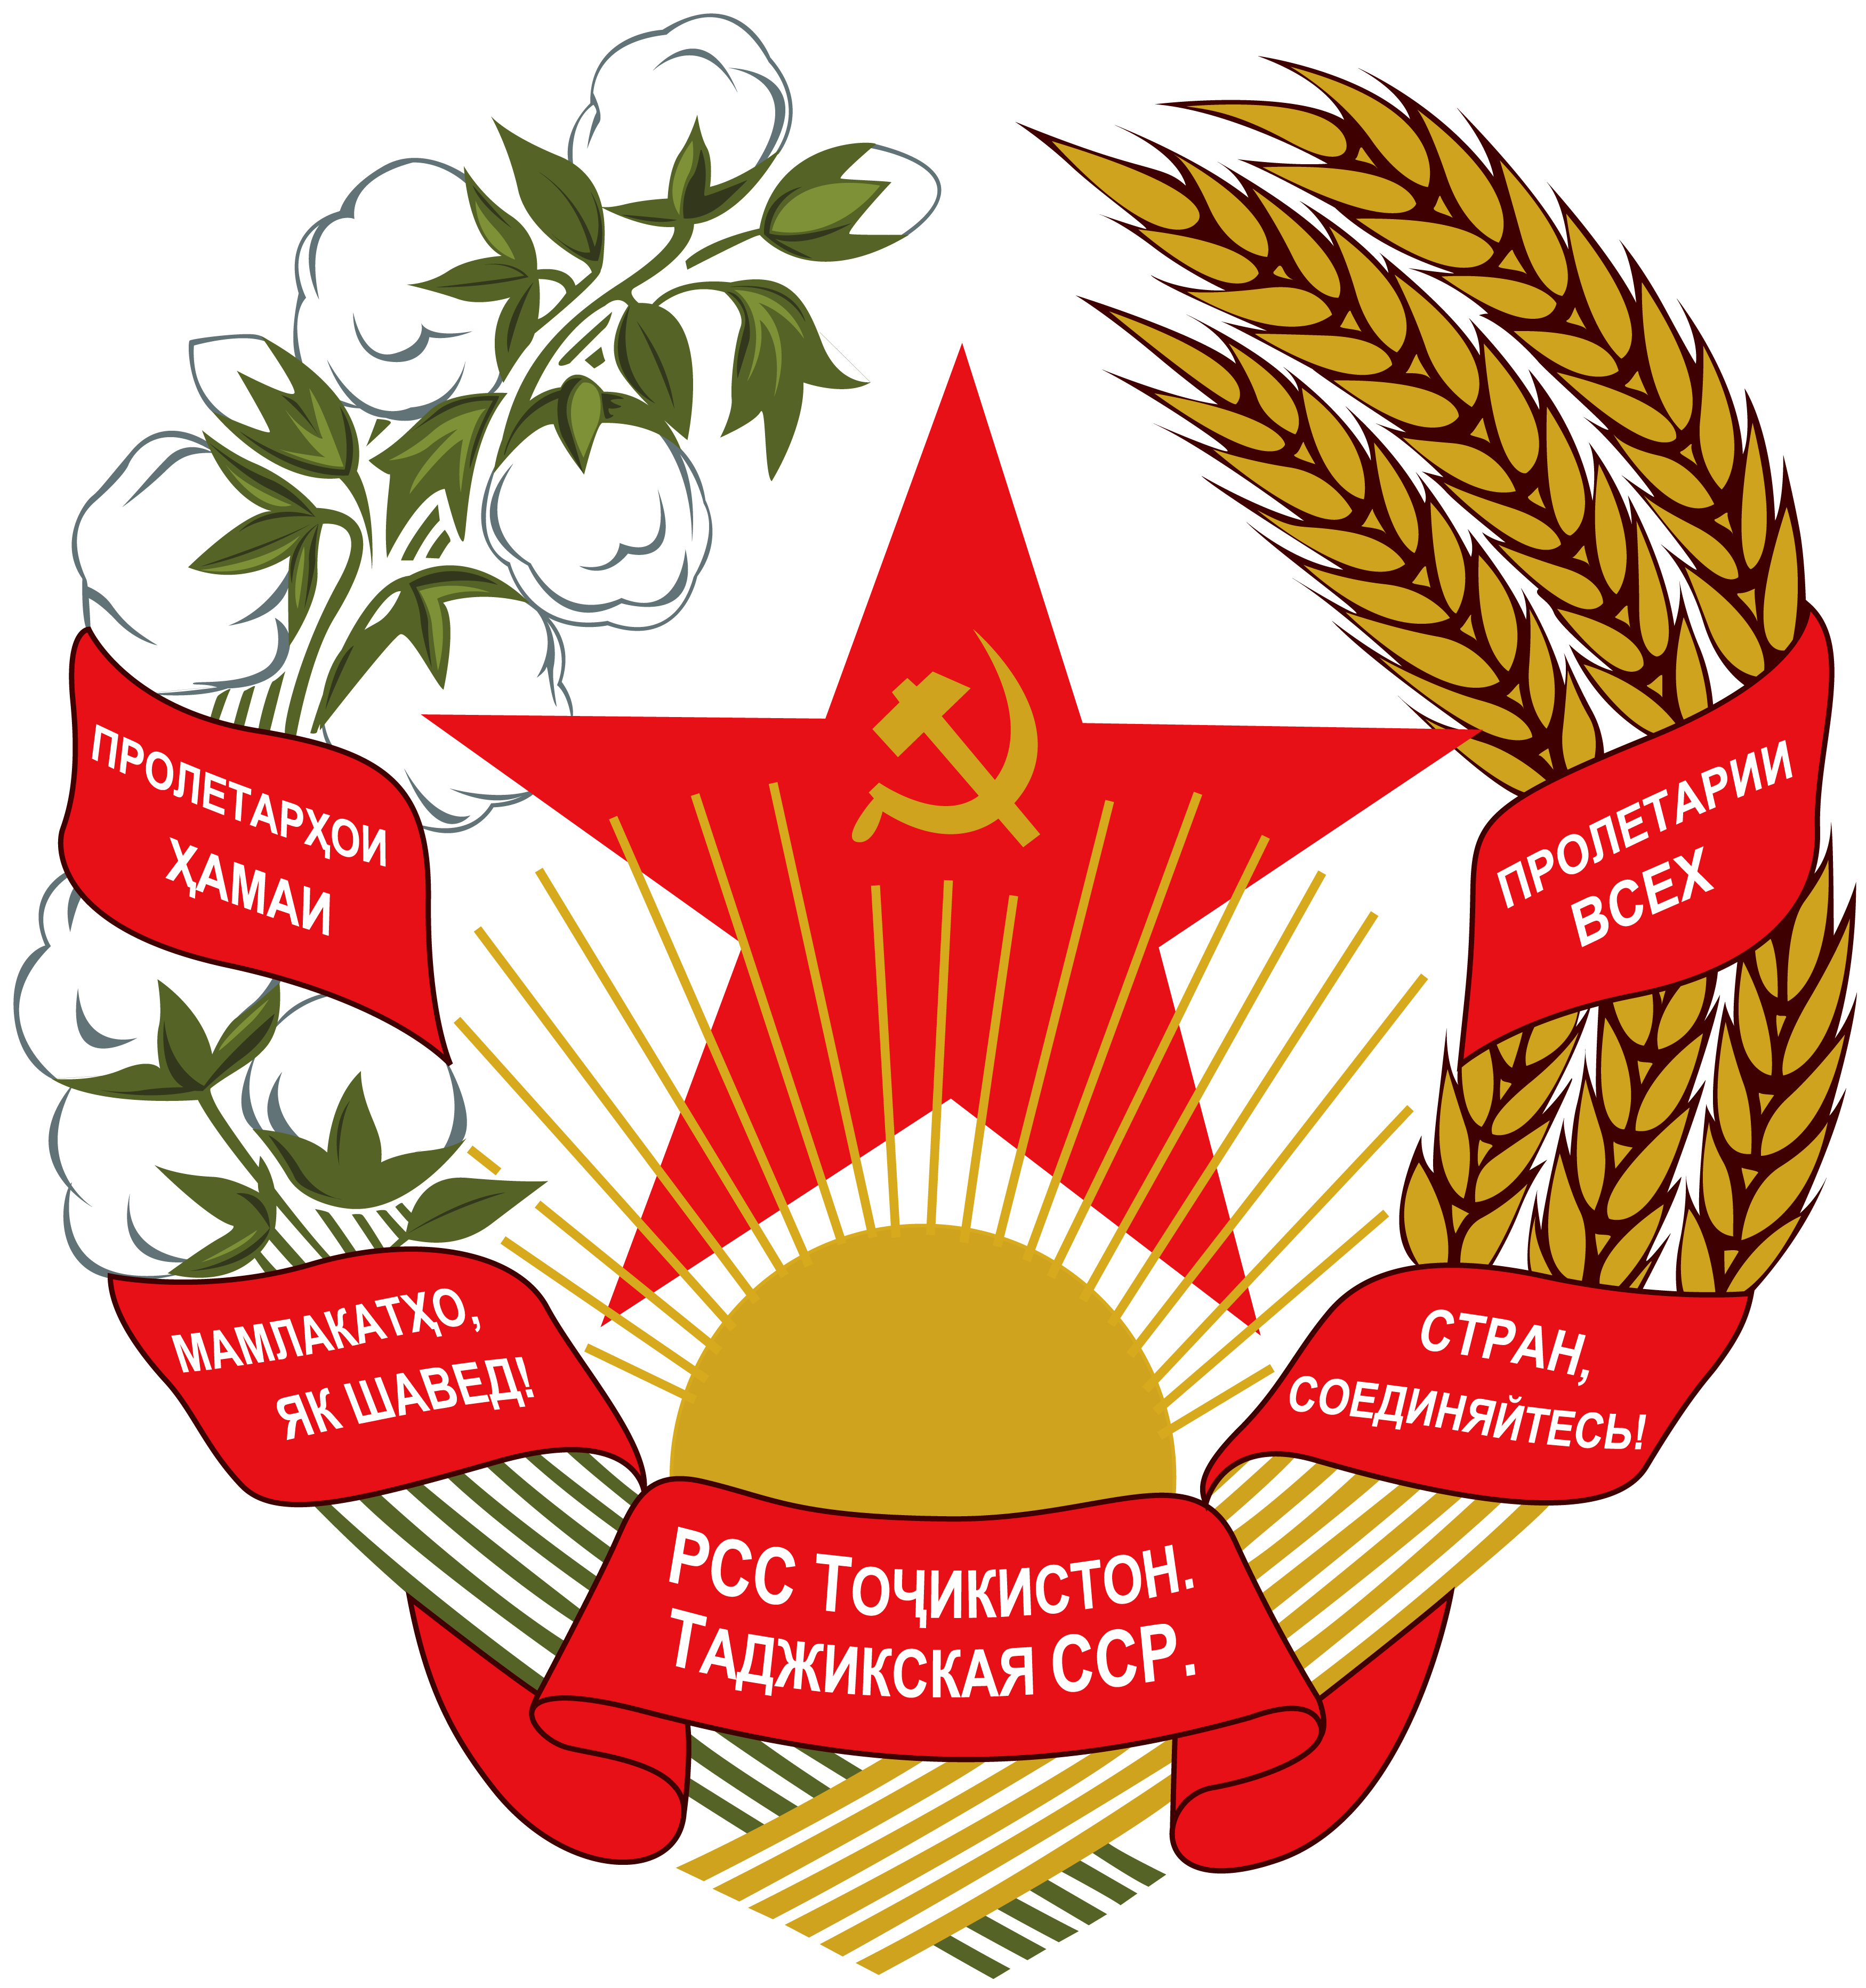 塔吉克蘇維埃社會主義共和國國徽